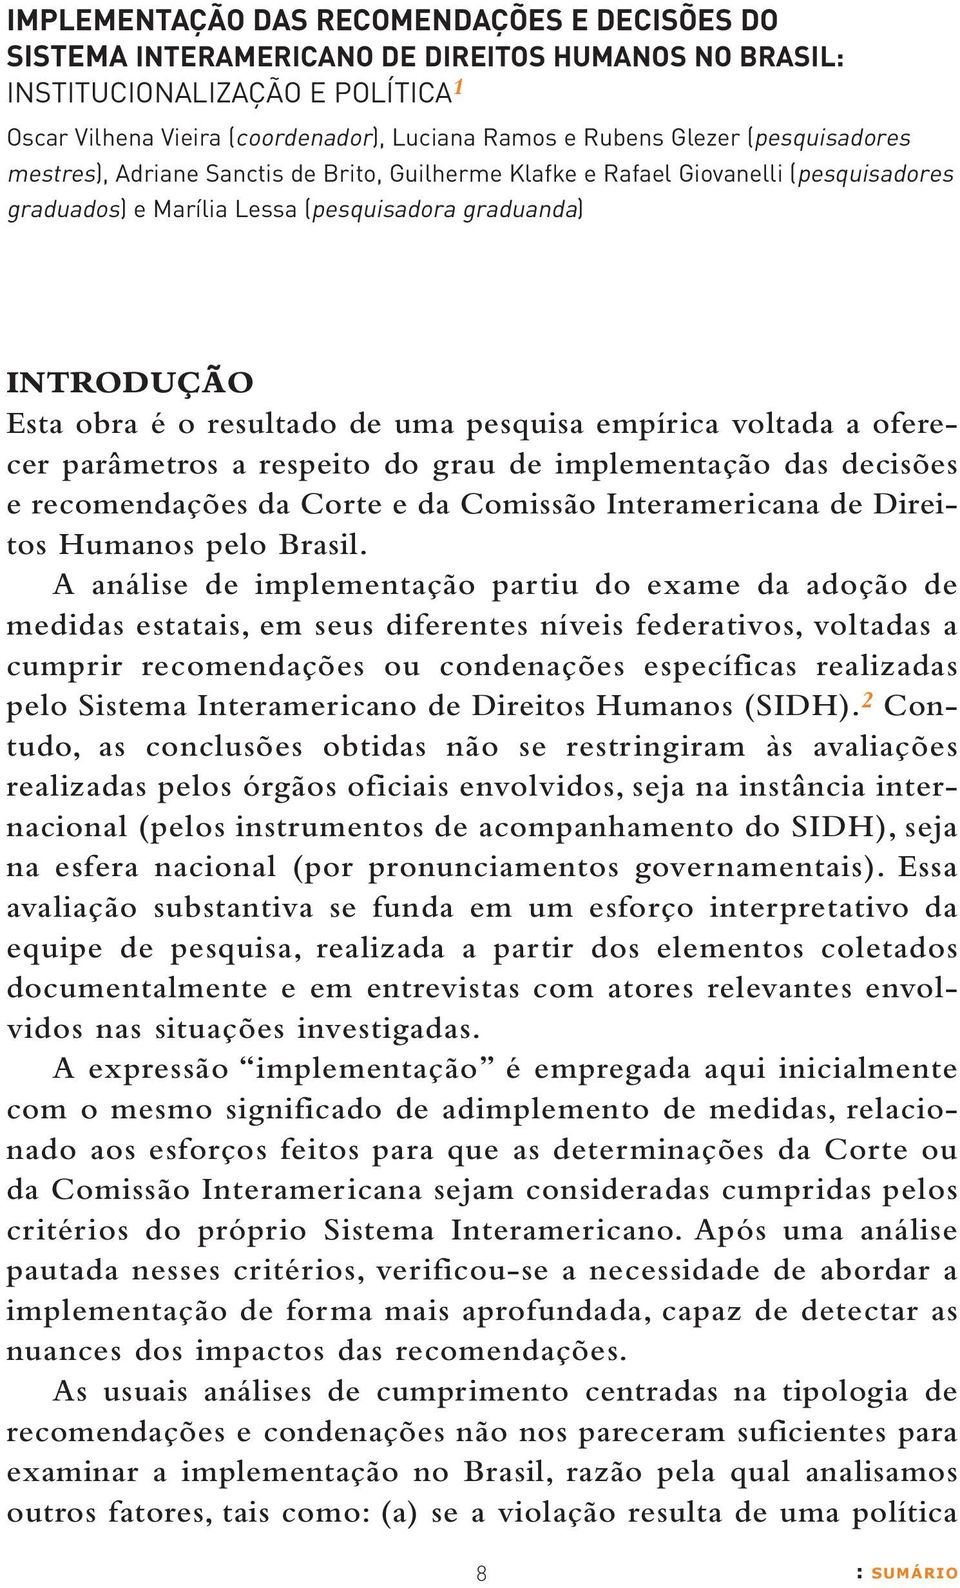 pesquisa empírica voltada a oferecer parâmetros a respeito do grau de implementação das decisões e recomendações da Corte e da Comissão Interamericana de Direitos Humanos pelo Brasil.